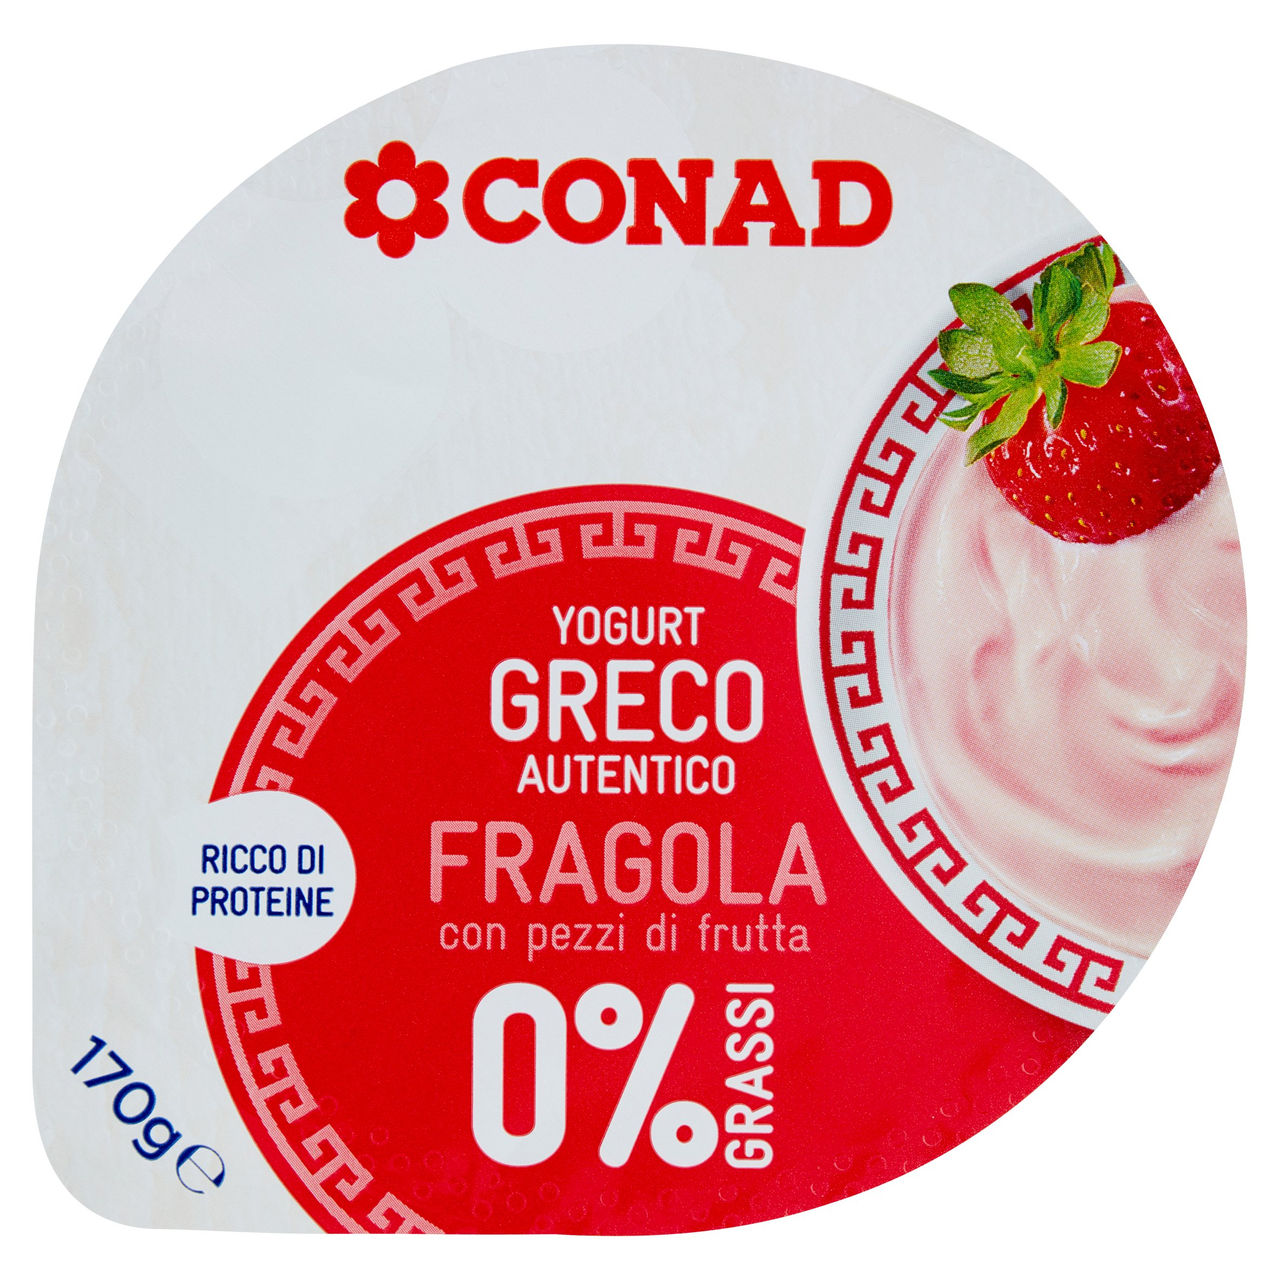 Yogurt Greco 0% Grassi Conad in vendita online